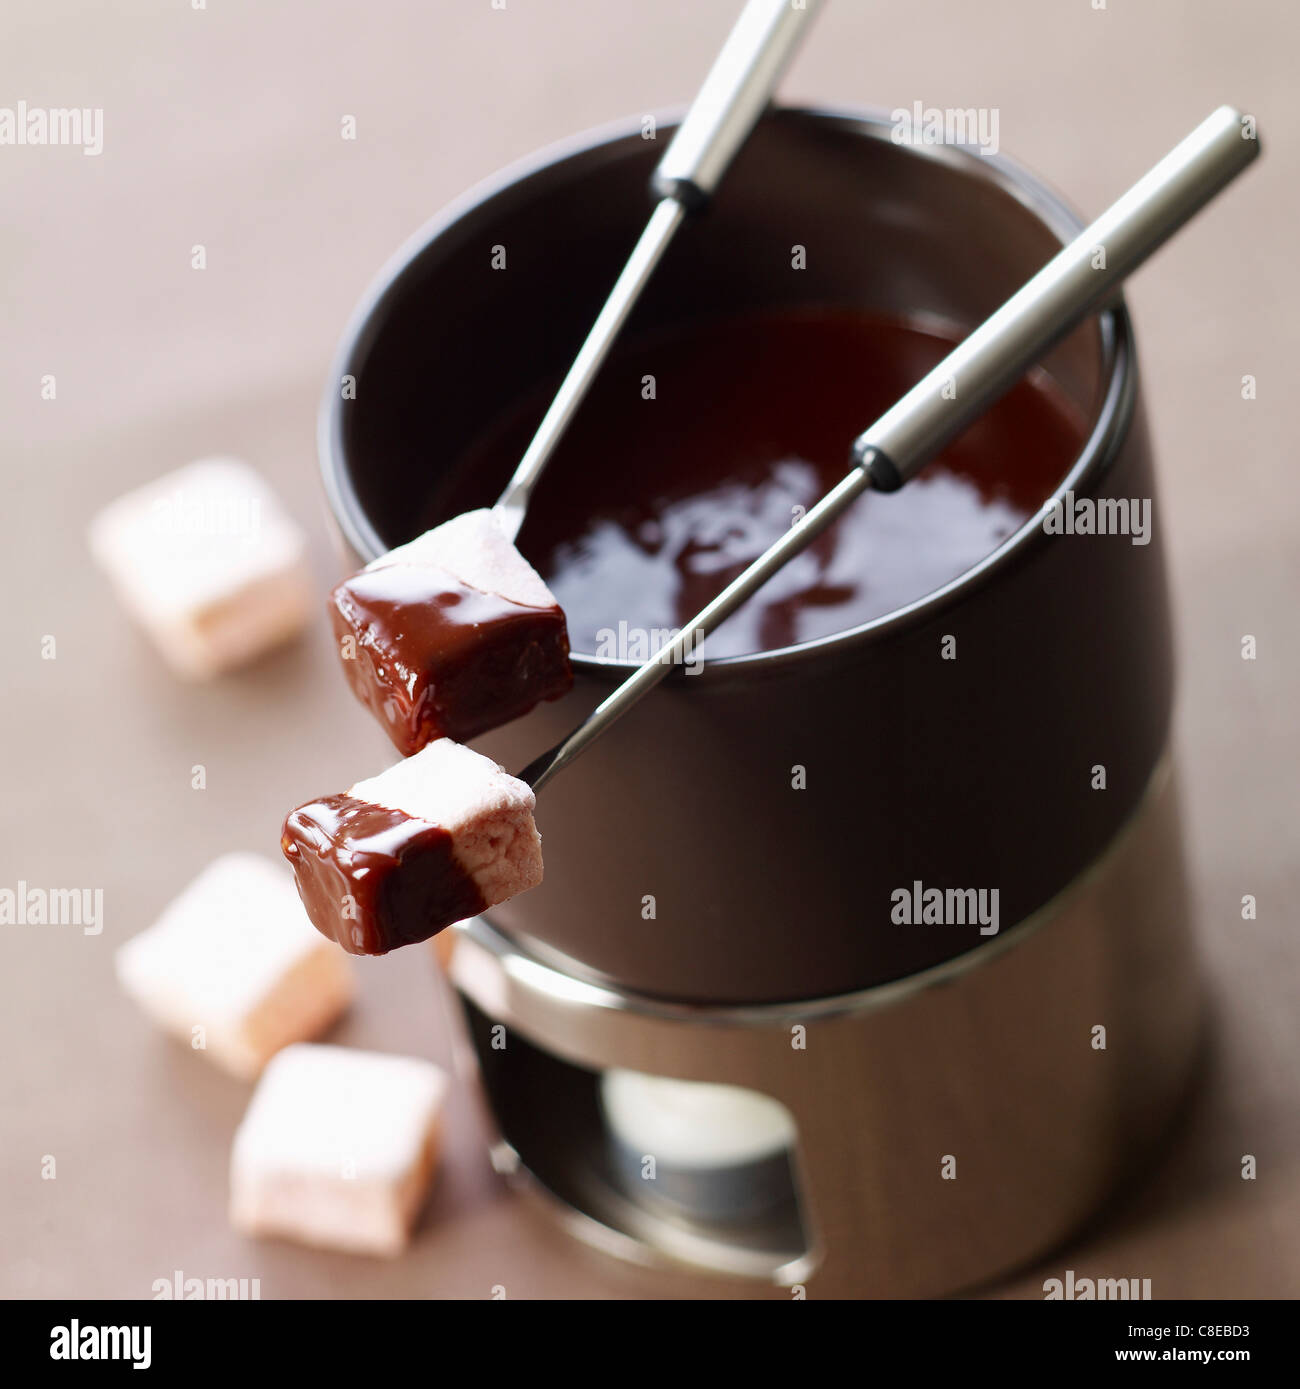 L'eau de rose-guimauves aromatisées trempés dans une fondue au chocolat Banque D'Images